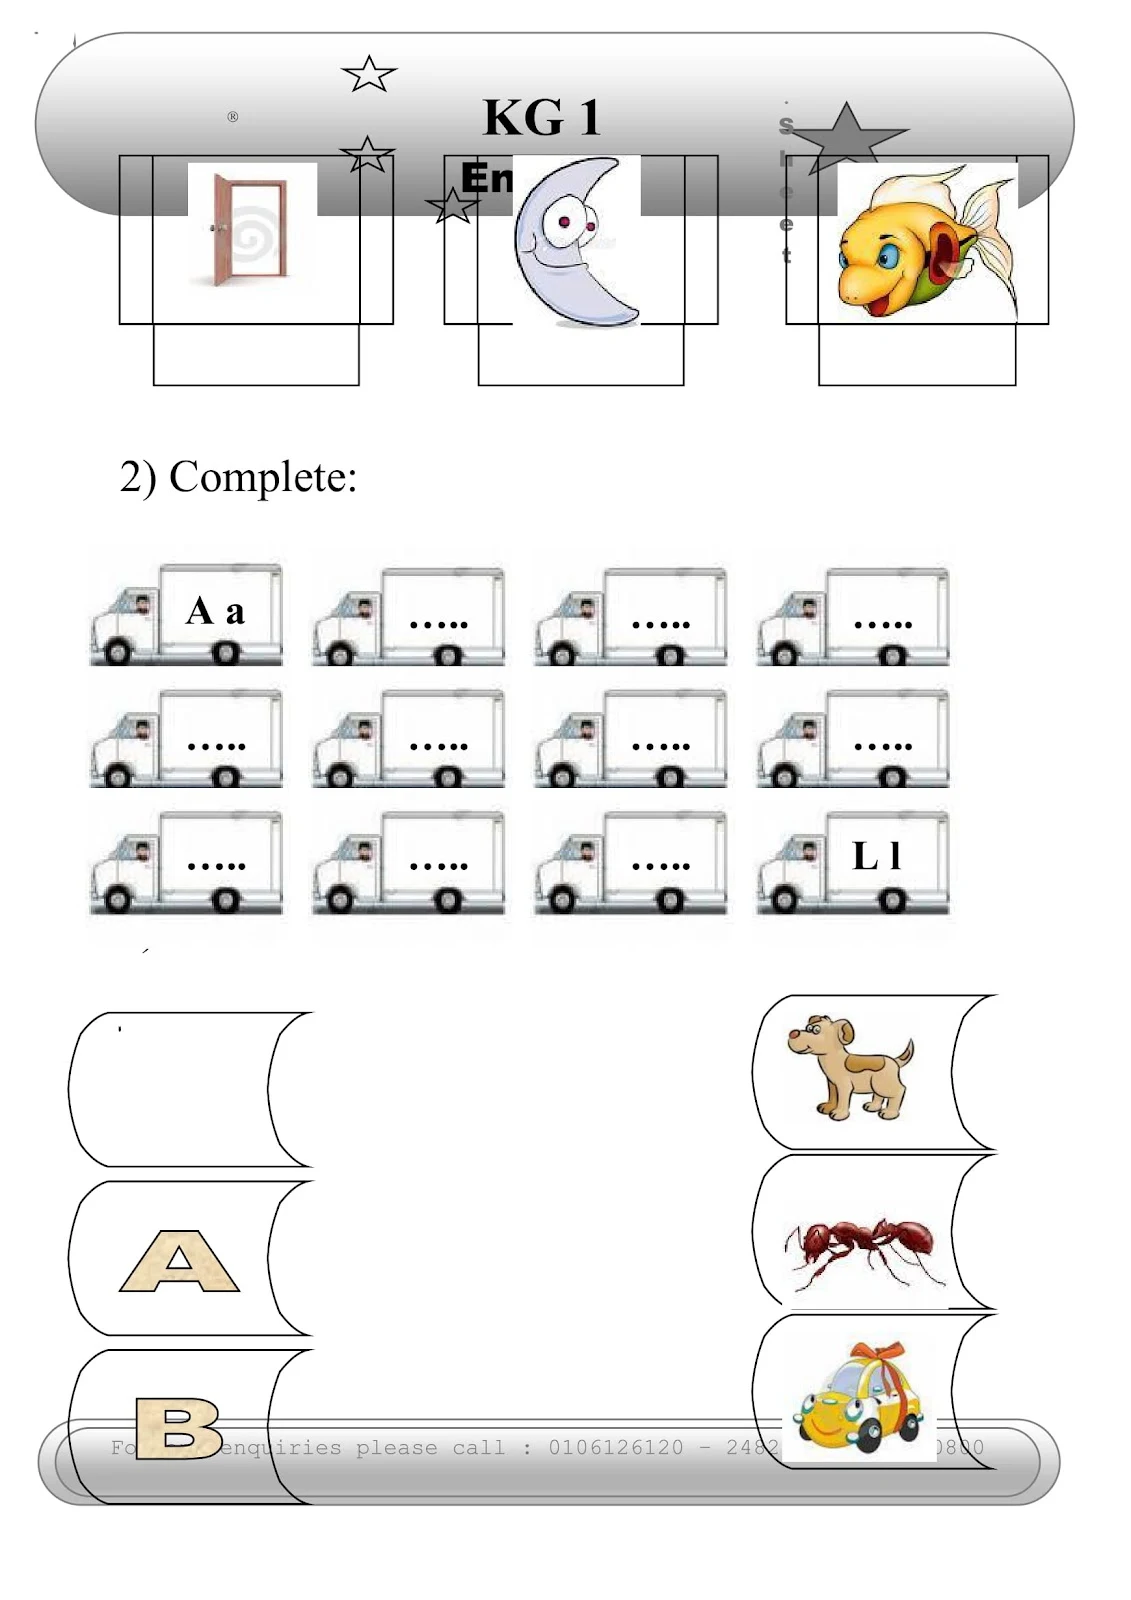 مذكرة تعلم الحروف الانجليزية وتدربيات عليها pdf تحميل مباشر